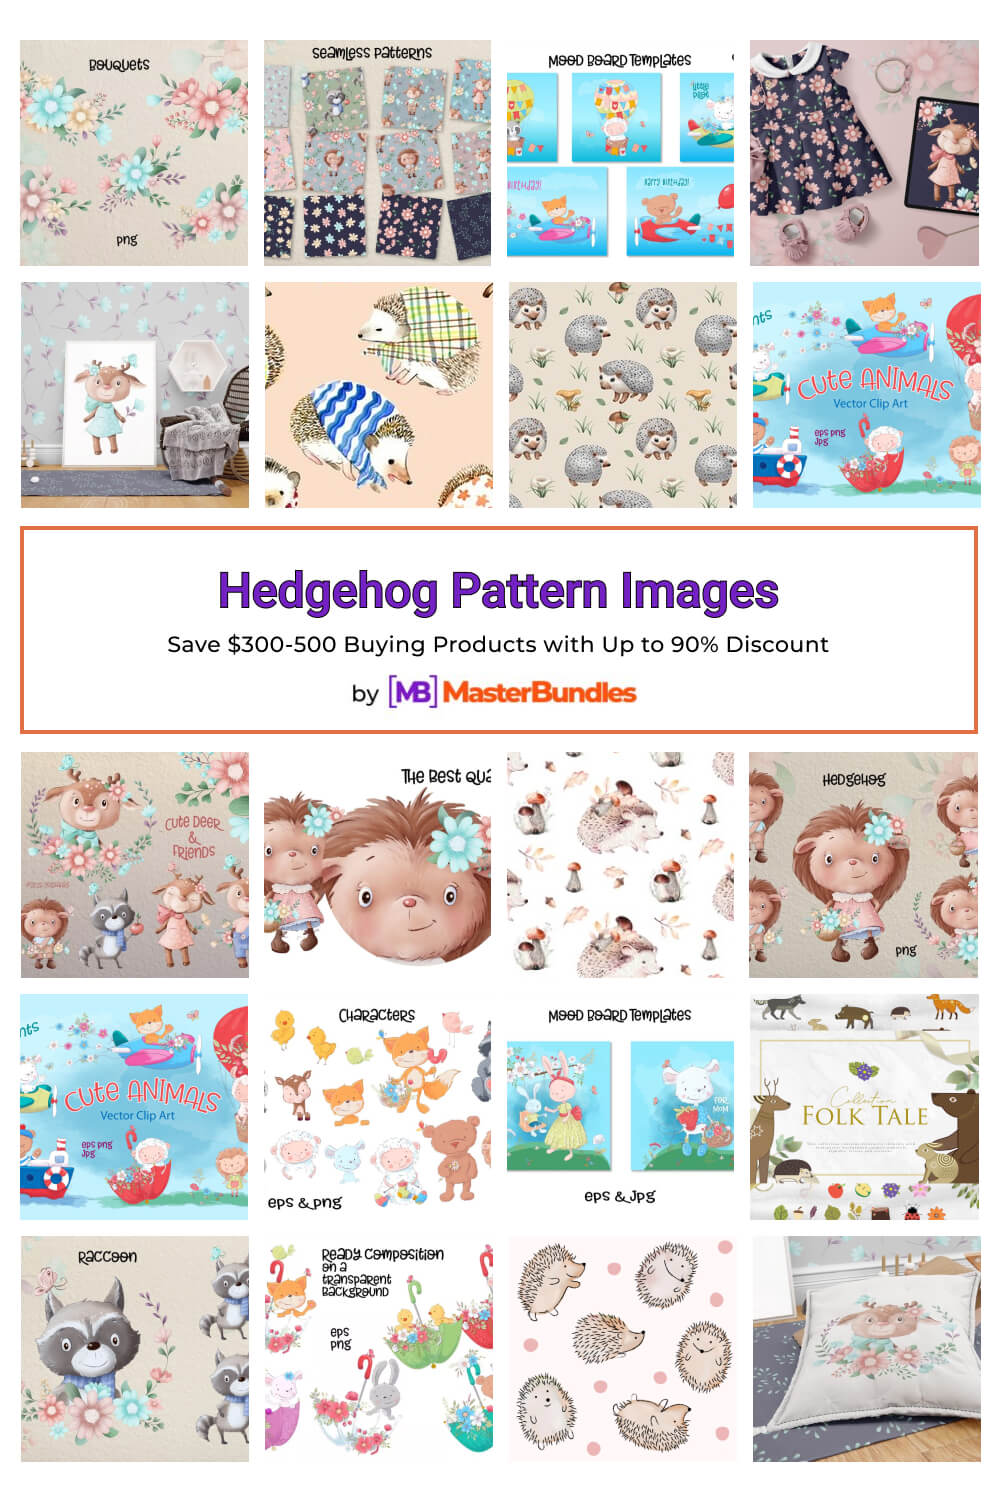 hedgehog pattern images pinterest image.